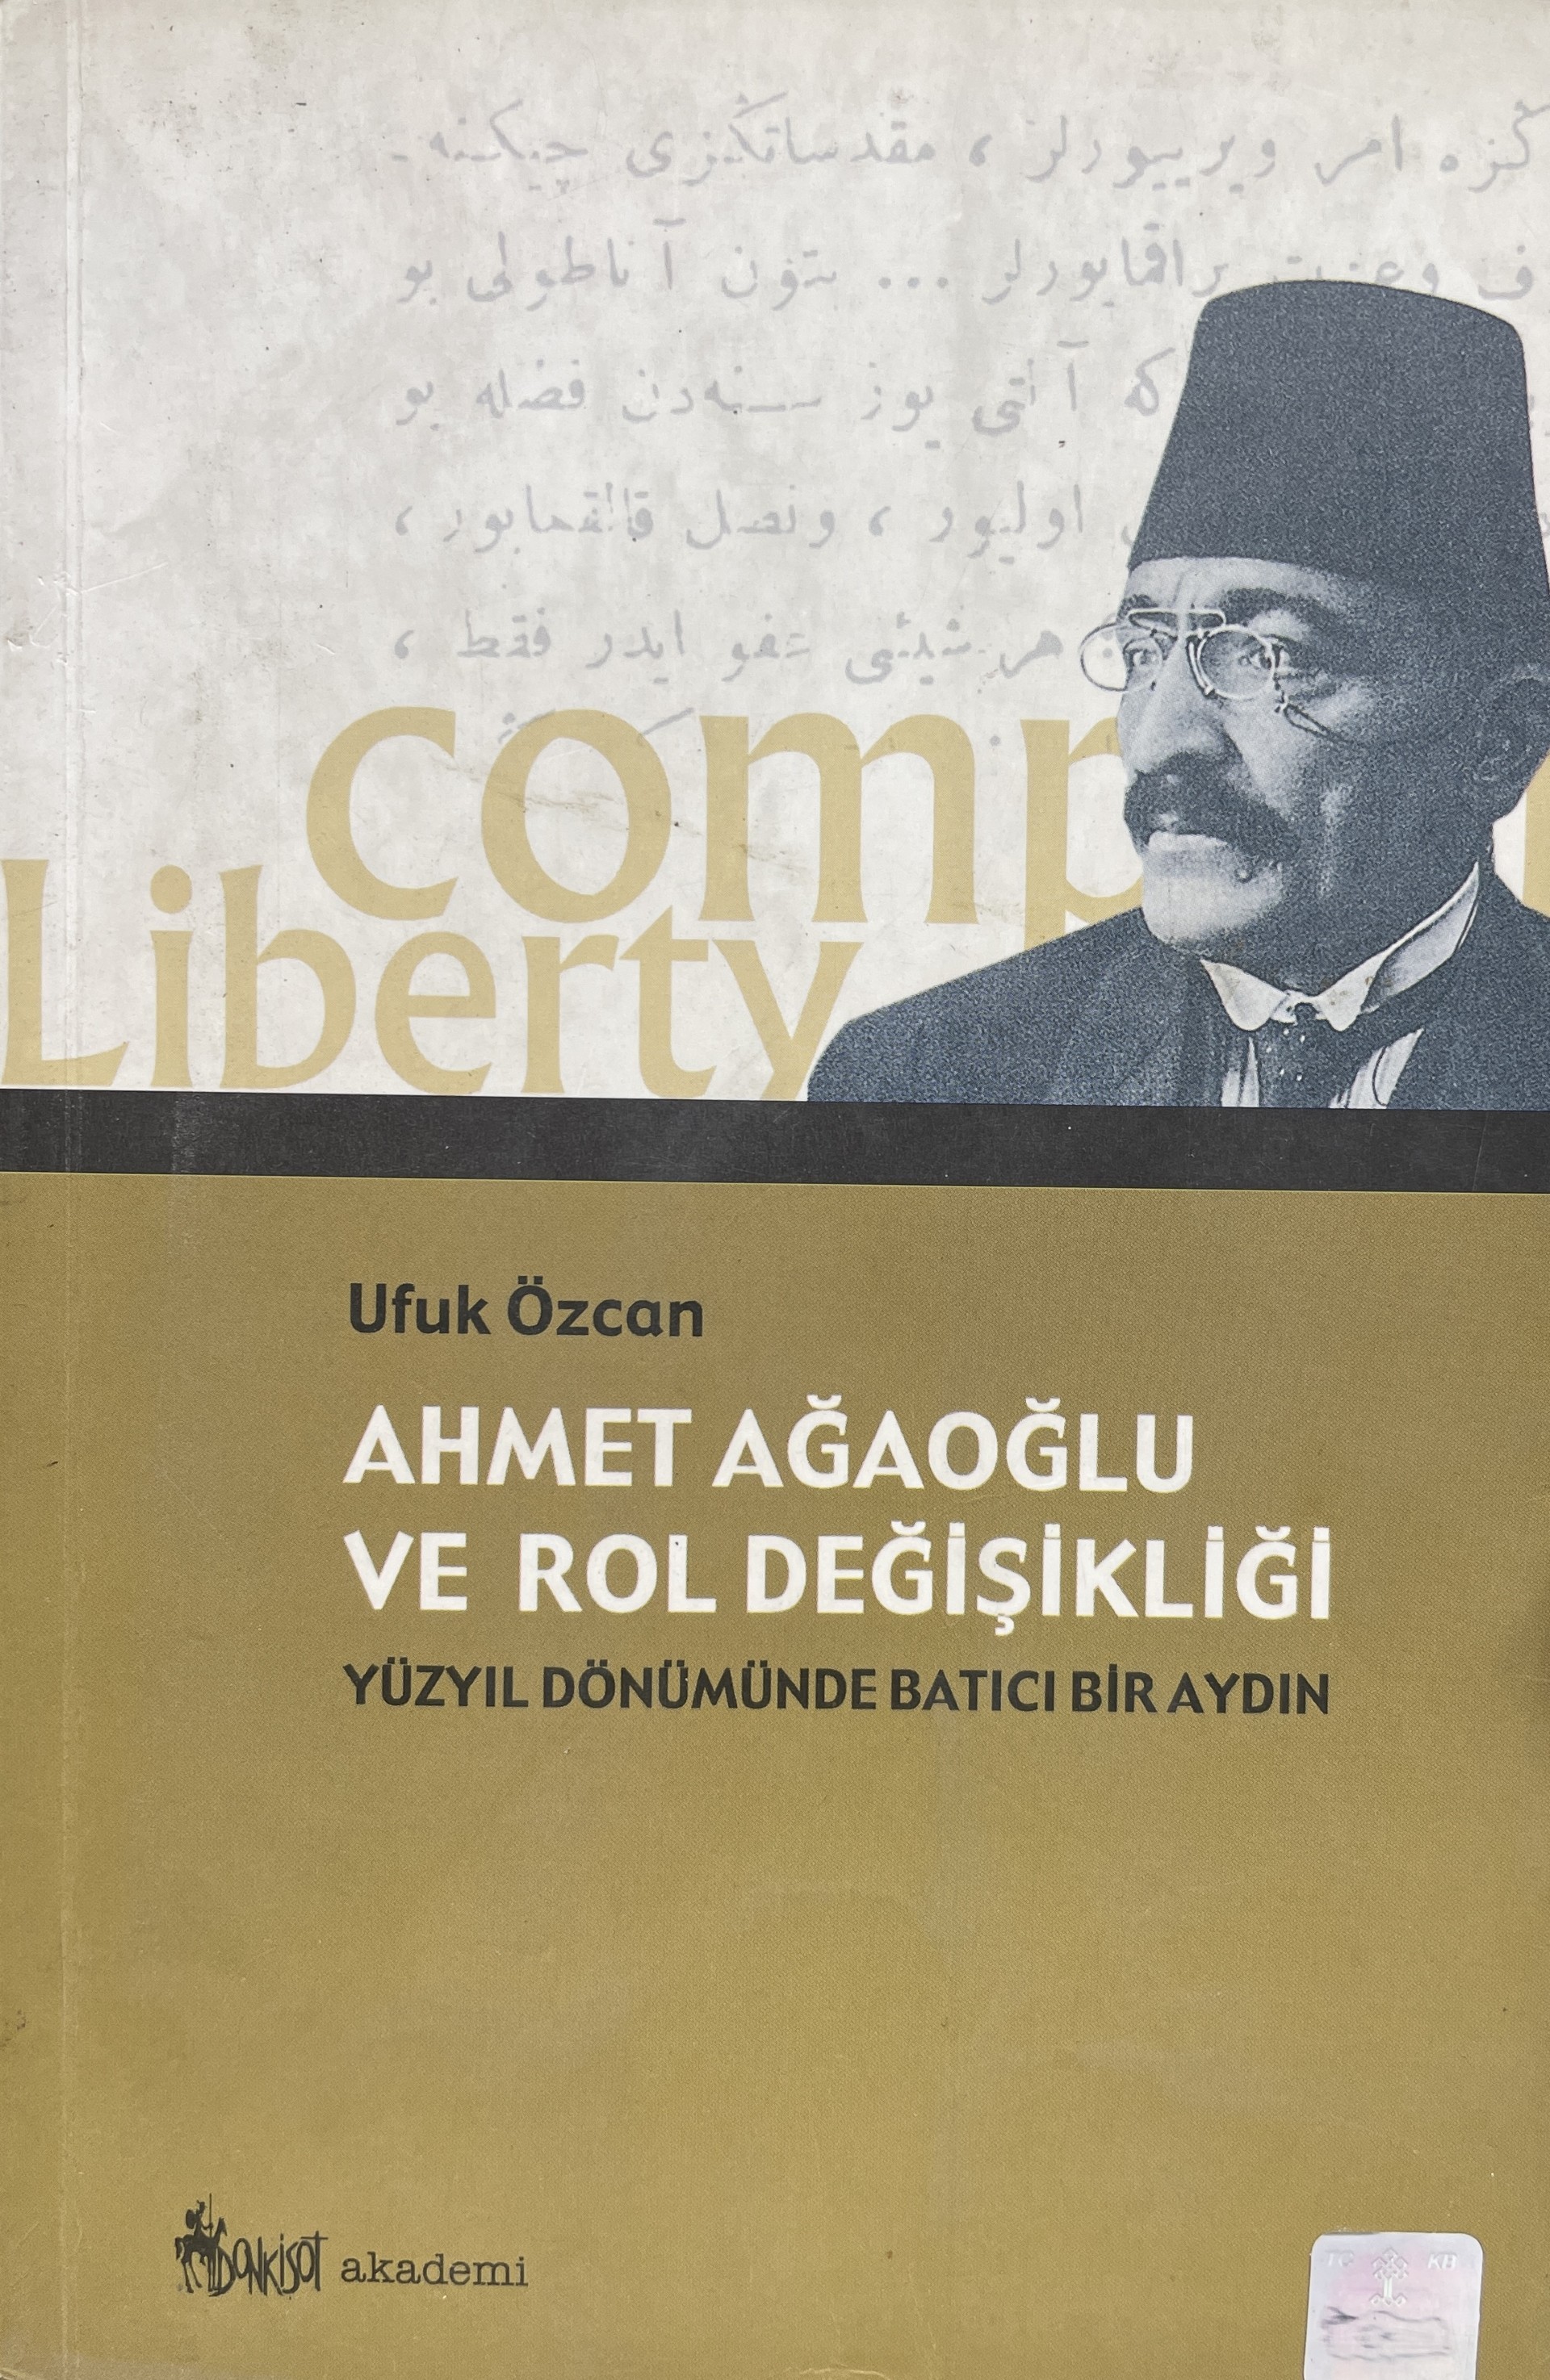 Ufuk Özcan - Ahmet Ağaoğlu ve Rol Değişikliği